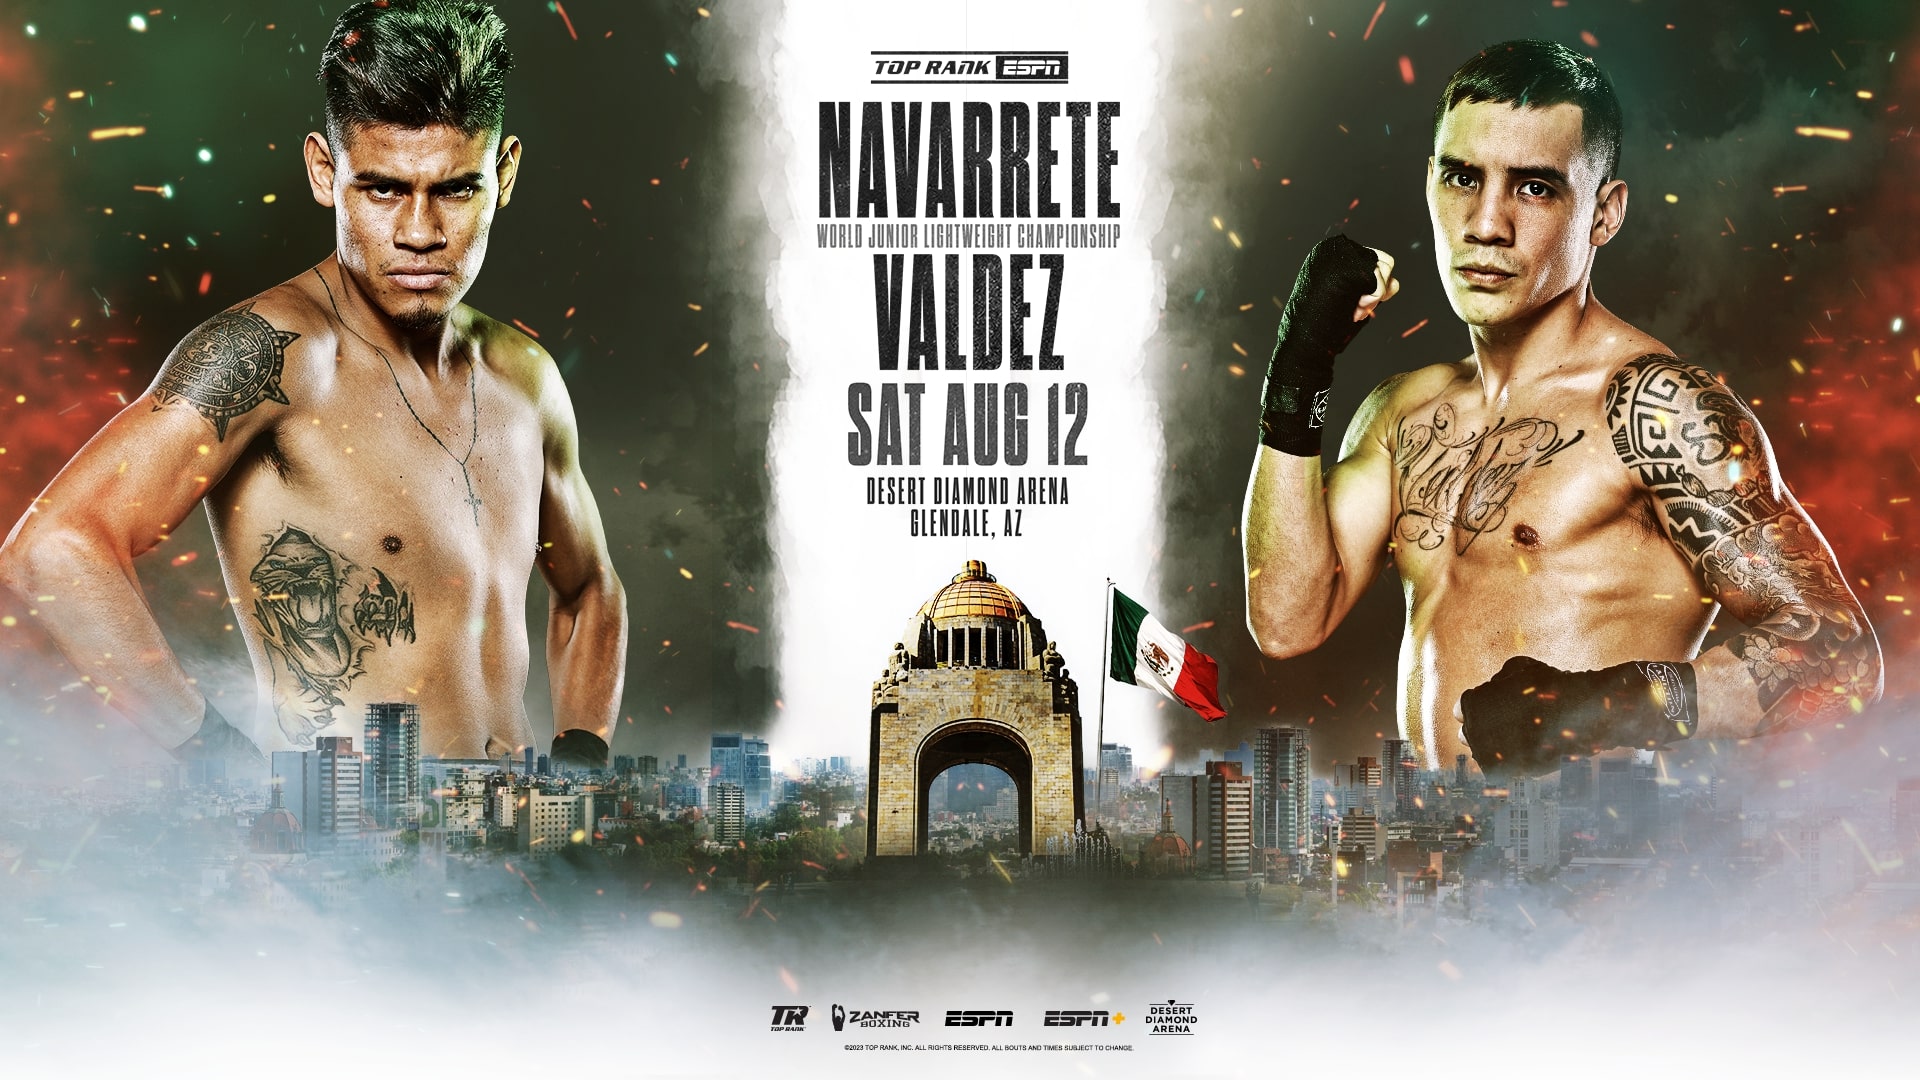 El 12 de agosto se disputará la pelea por el título mundial superpluma de la WBO entre Emanuel Navarrete y Oscar Valdez 